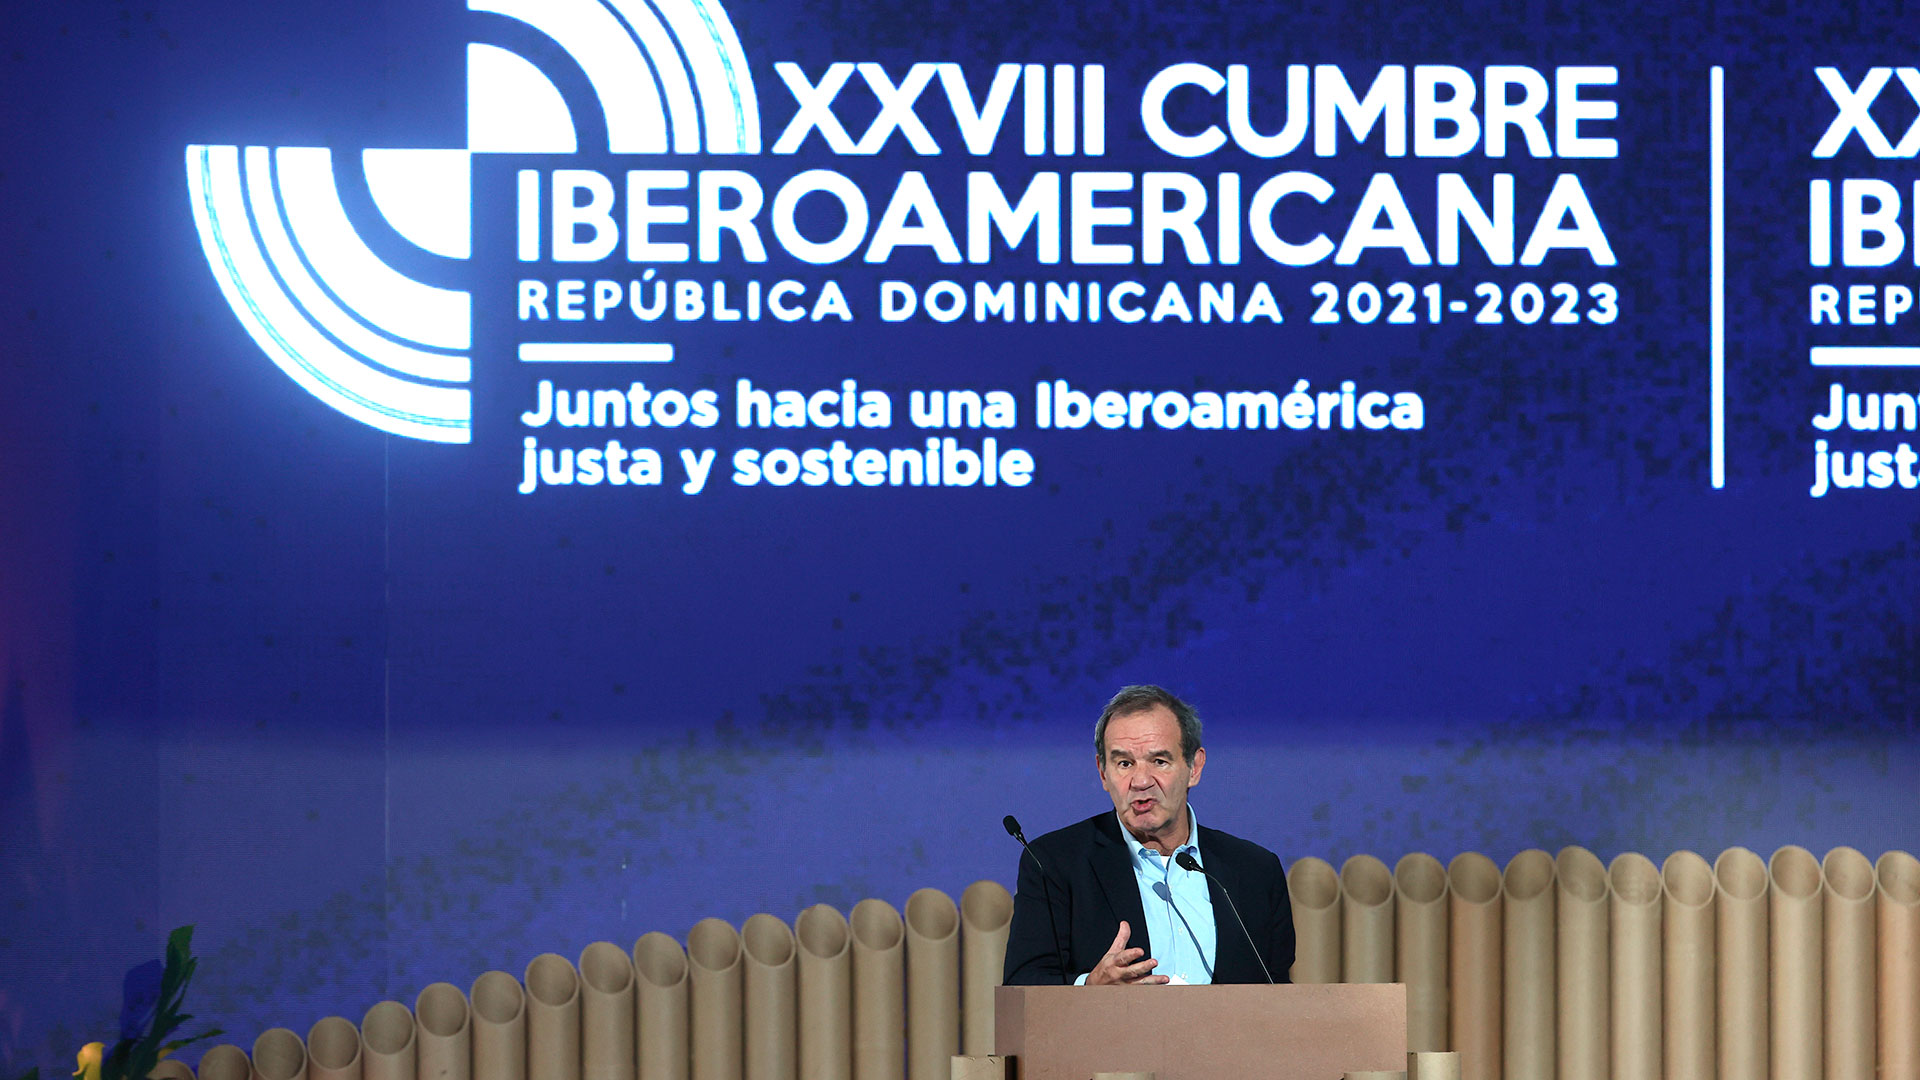 Comienza la Cumbre Iberoamericana en República Dominicana con la mira puesta en la economía